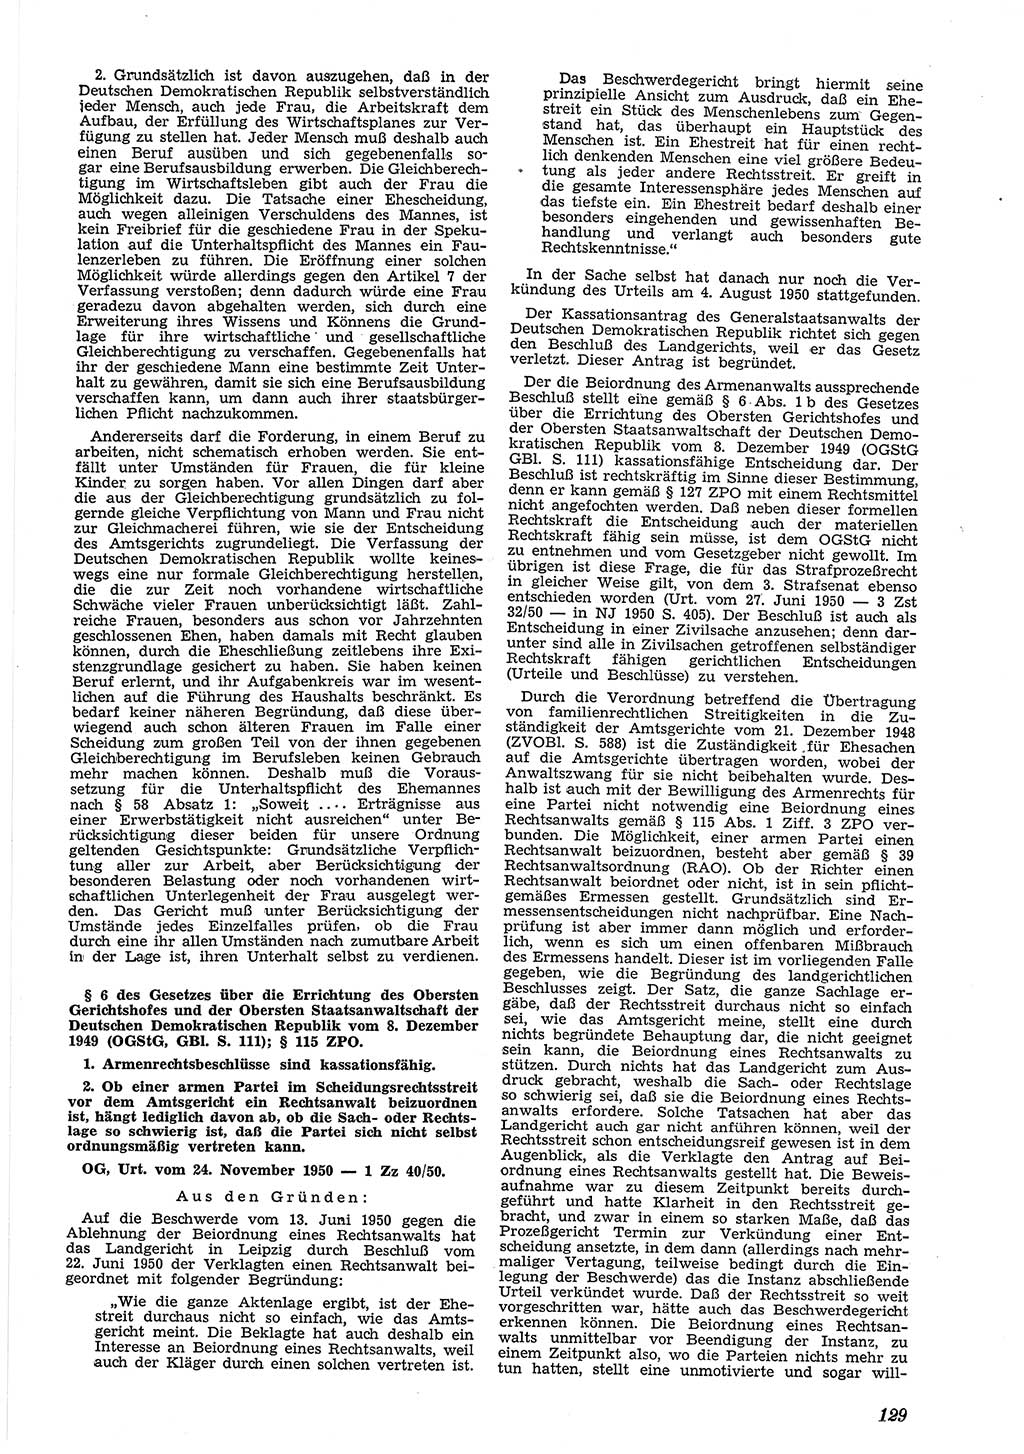 Neue Justiz (NJ), Zeitschrift für Recht und Rechtswissenschaft [Deutsche Demokratische Republik (DDR)], 5. Jahrgang 1951, Seite 129 (NJ DDR 1951, S. 129)